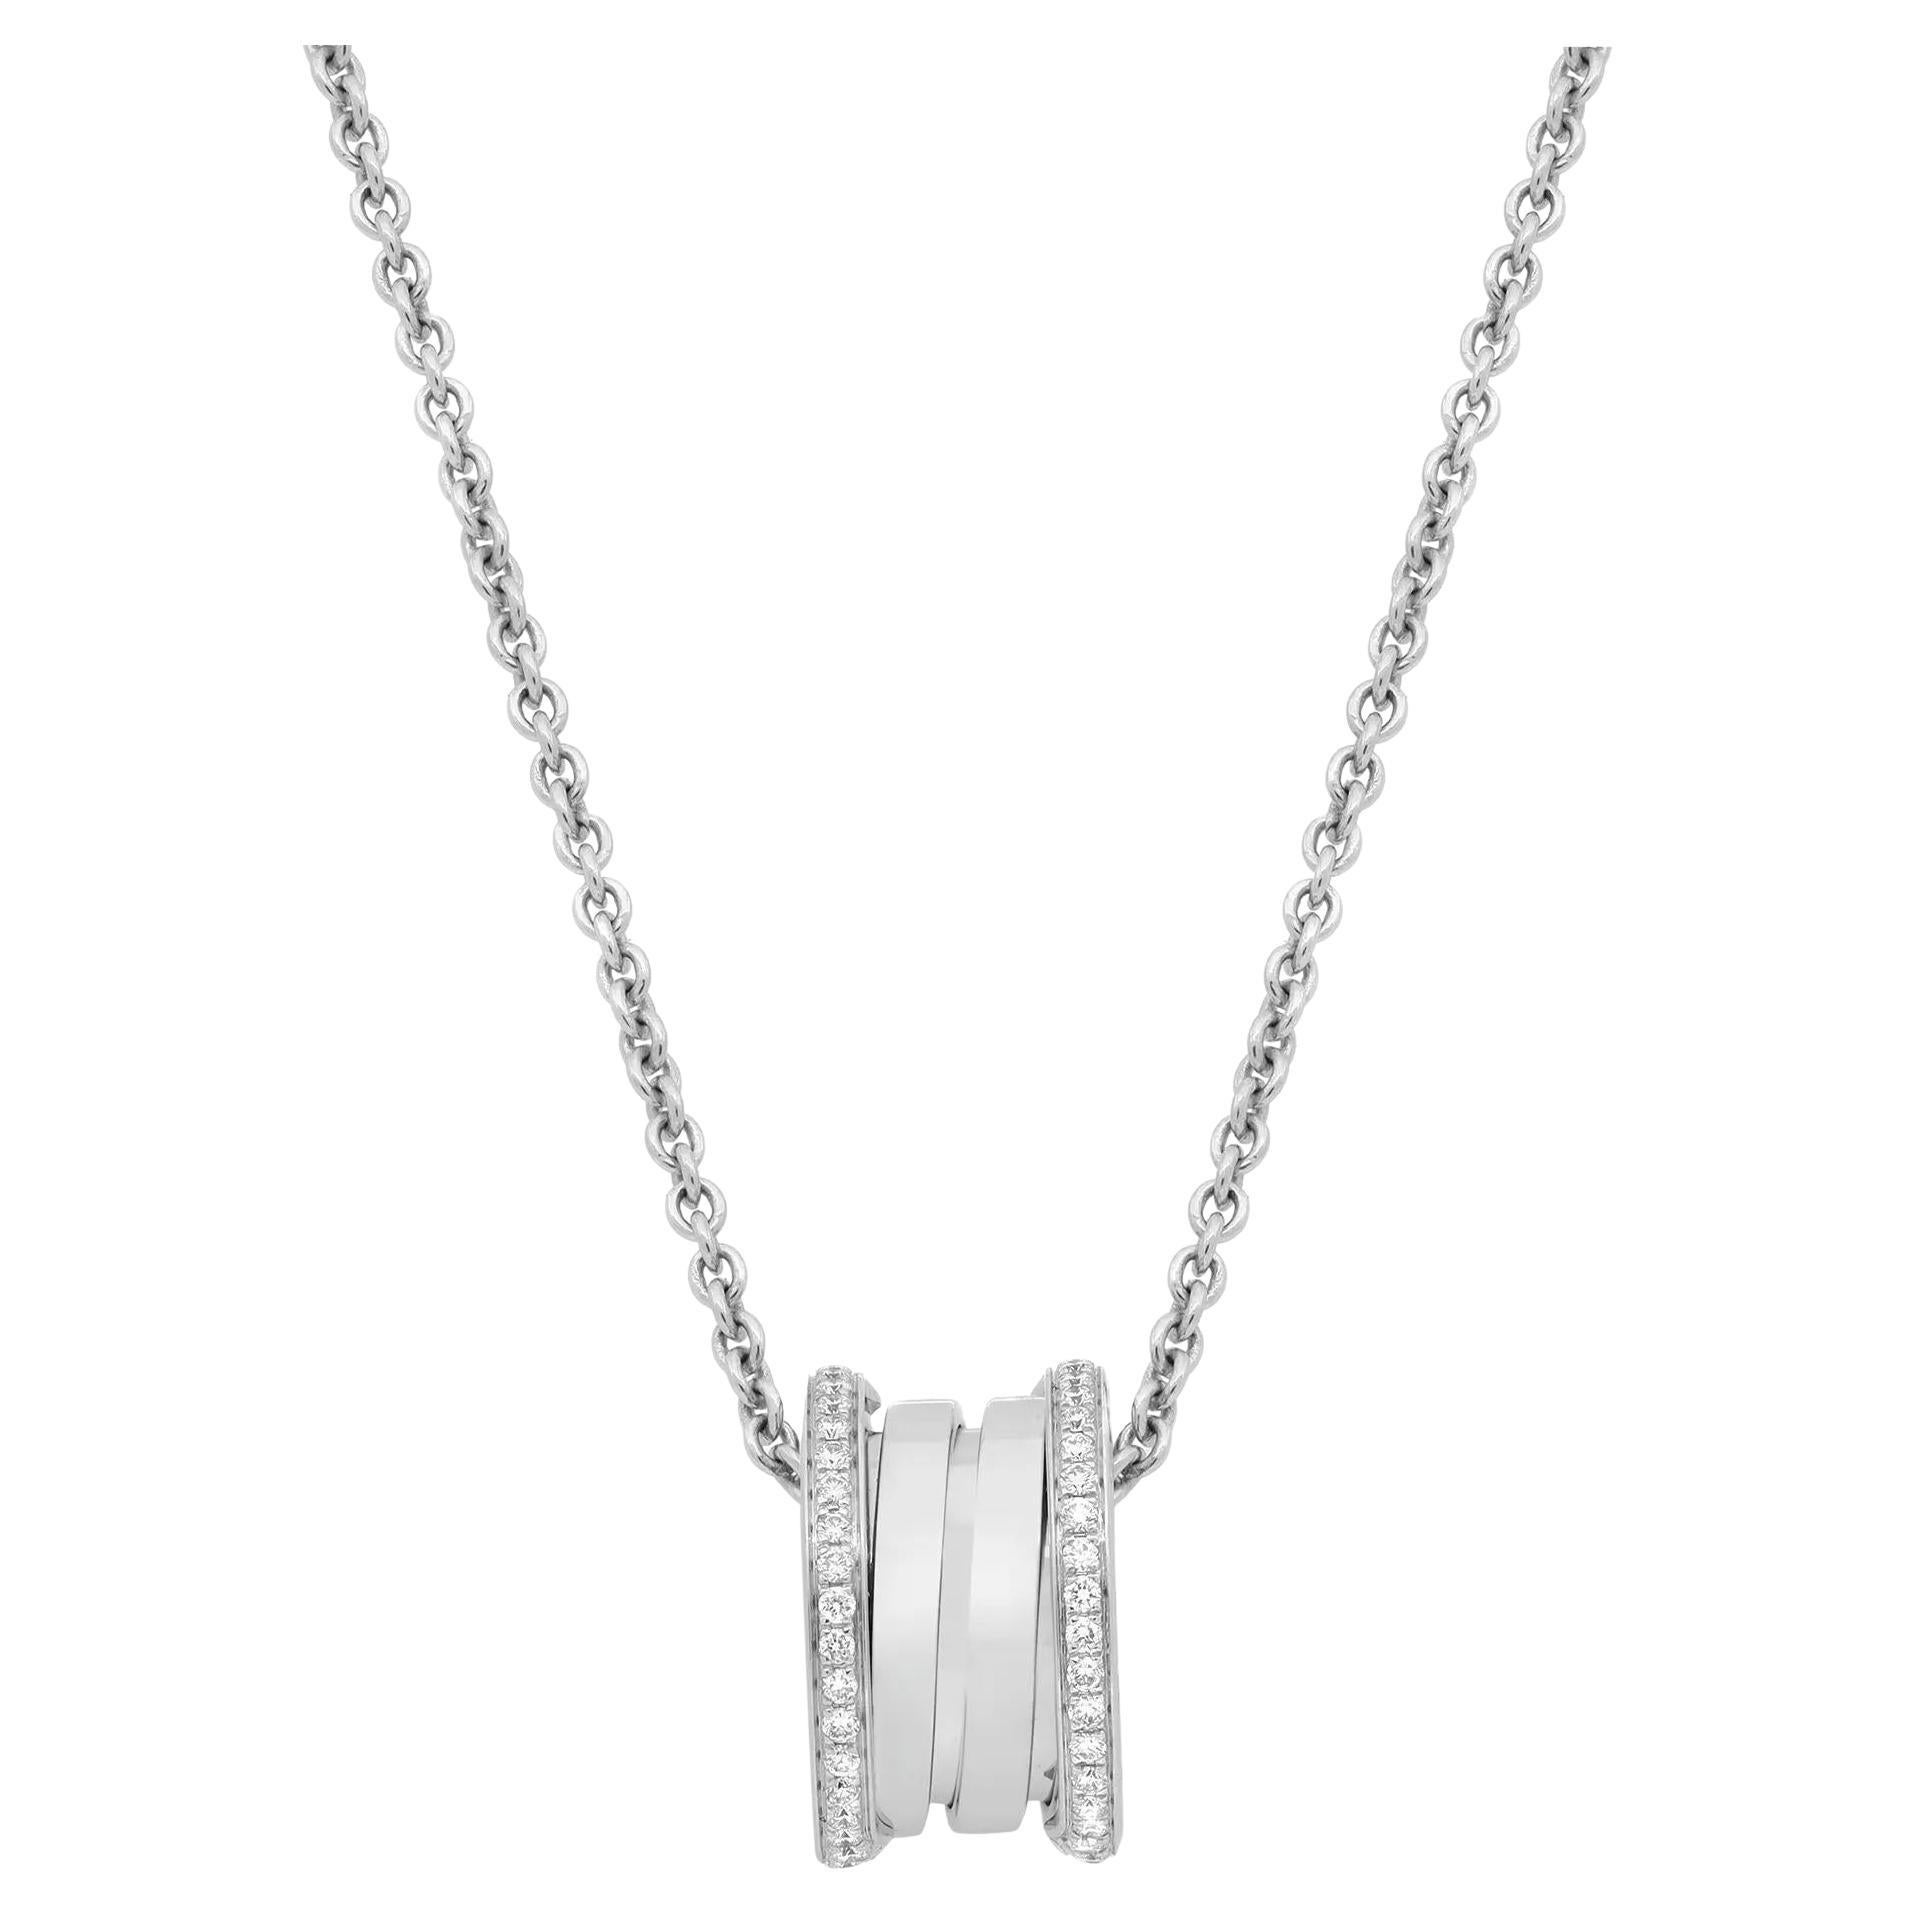 Bvlgari B.Zero1 Diamond Pendant Necklace 18K White Gold 0.38Cttw 18 Inches